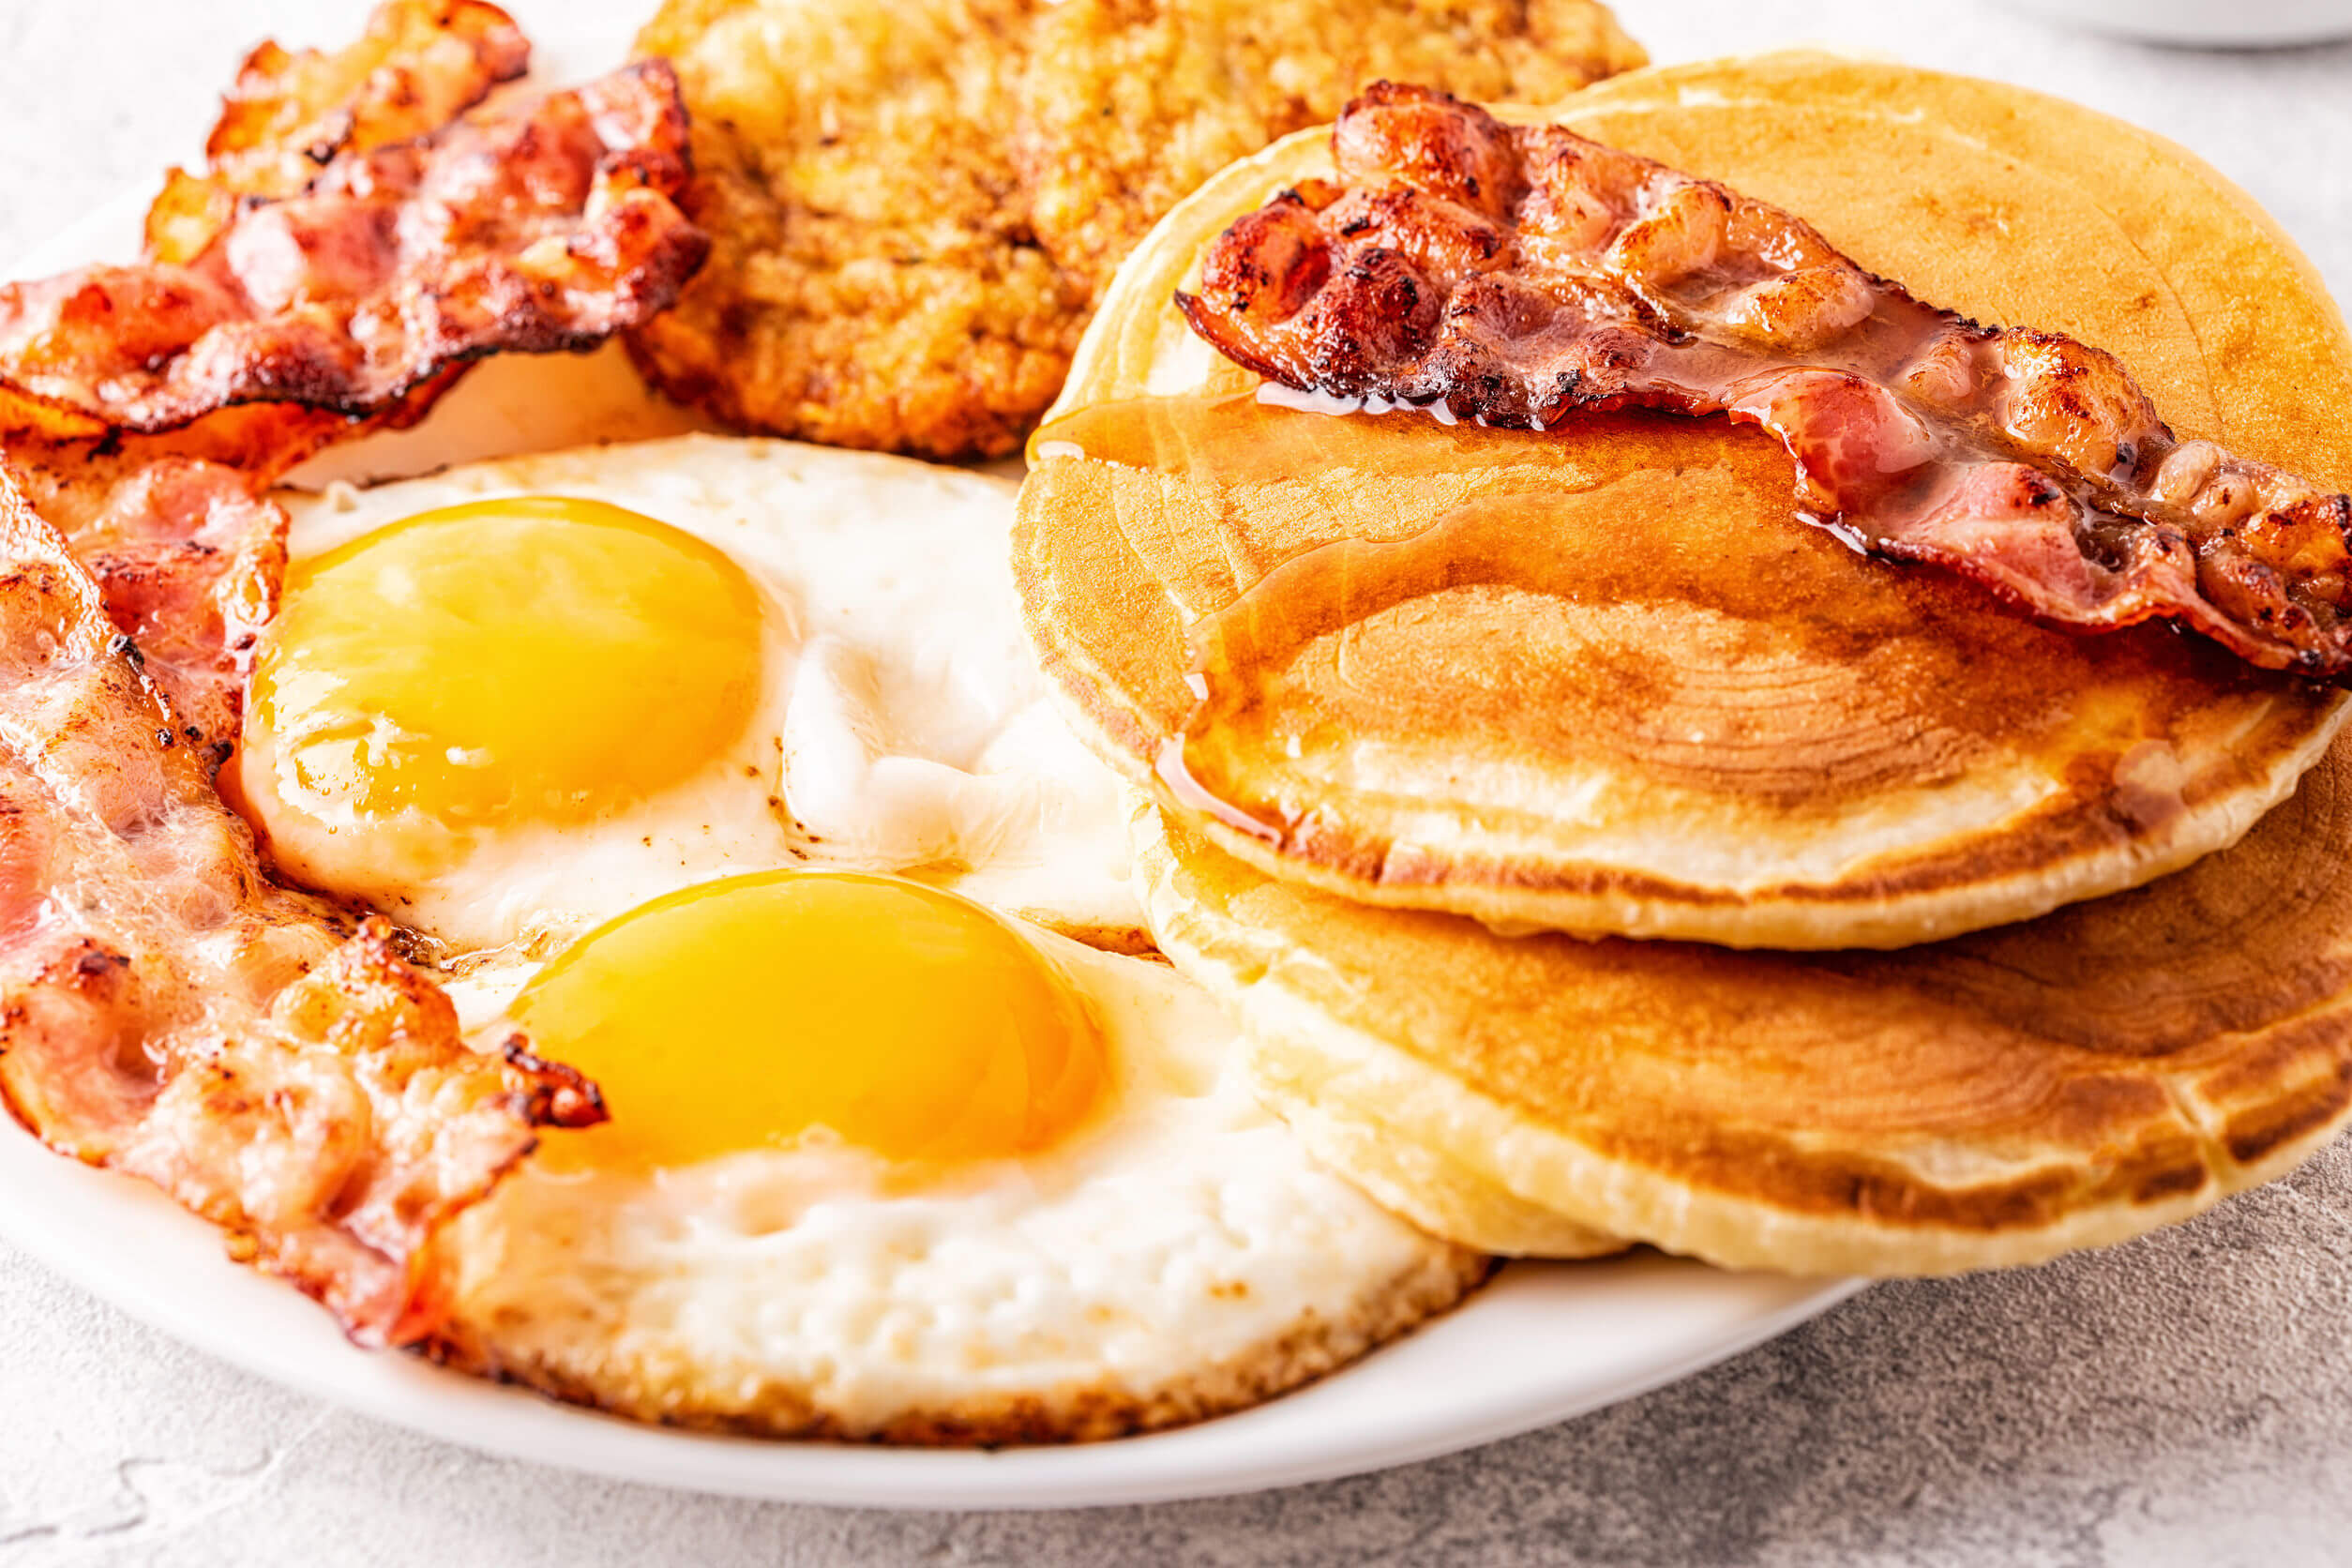 Si van a saltarse comidas es mejor escoger el desayuno